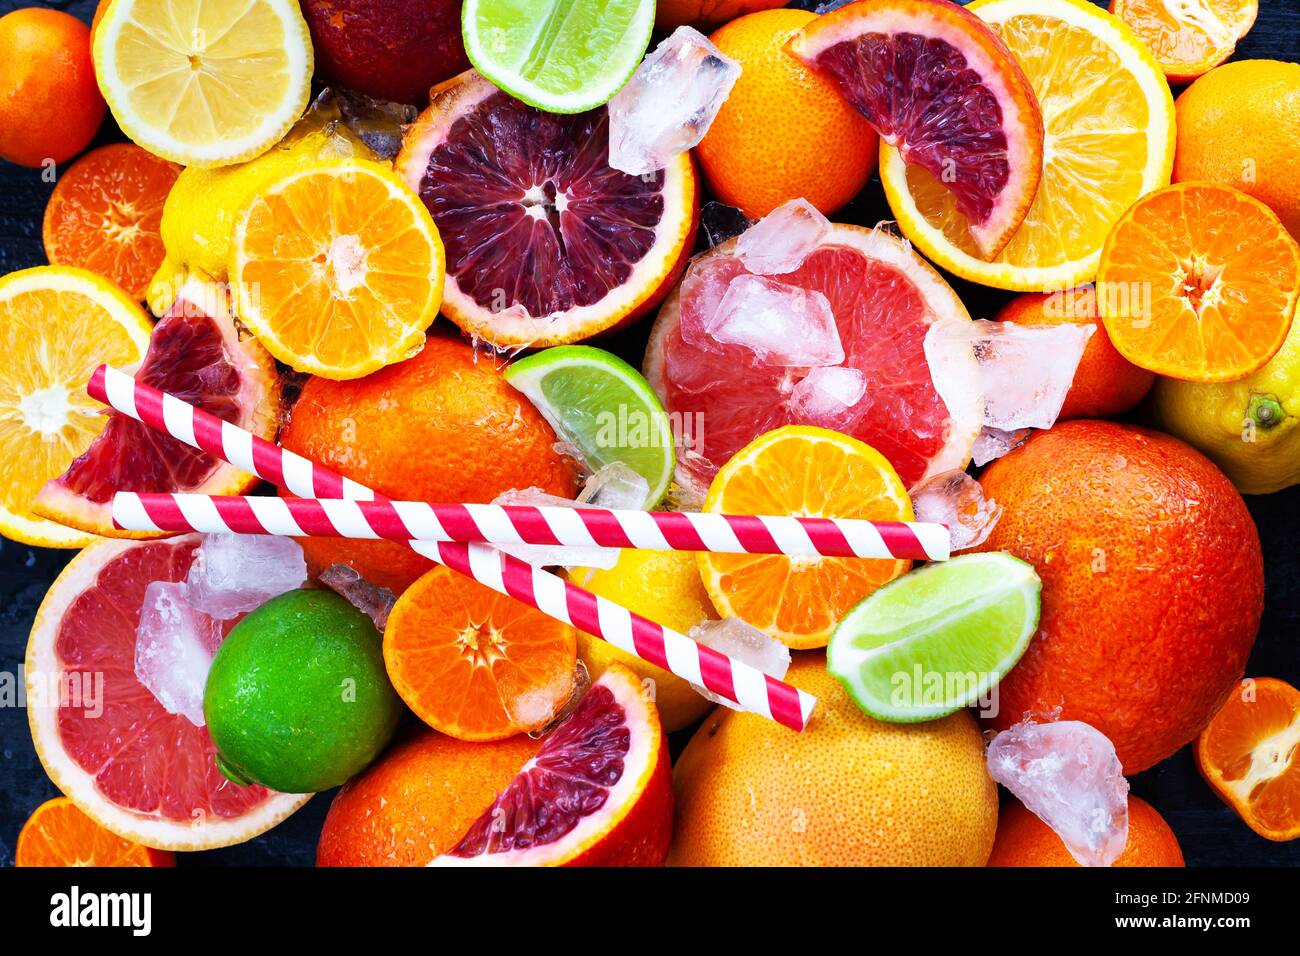 Gros plan sur les agrumes frais juteux - oranges, mandarines, citrons et limes, vue du dessus Banque D'Images